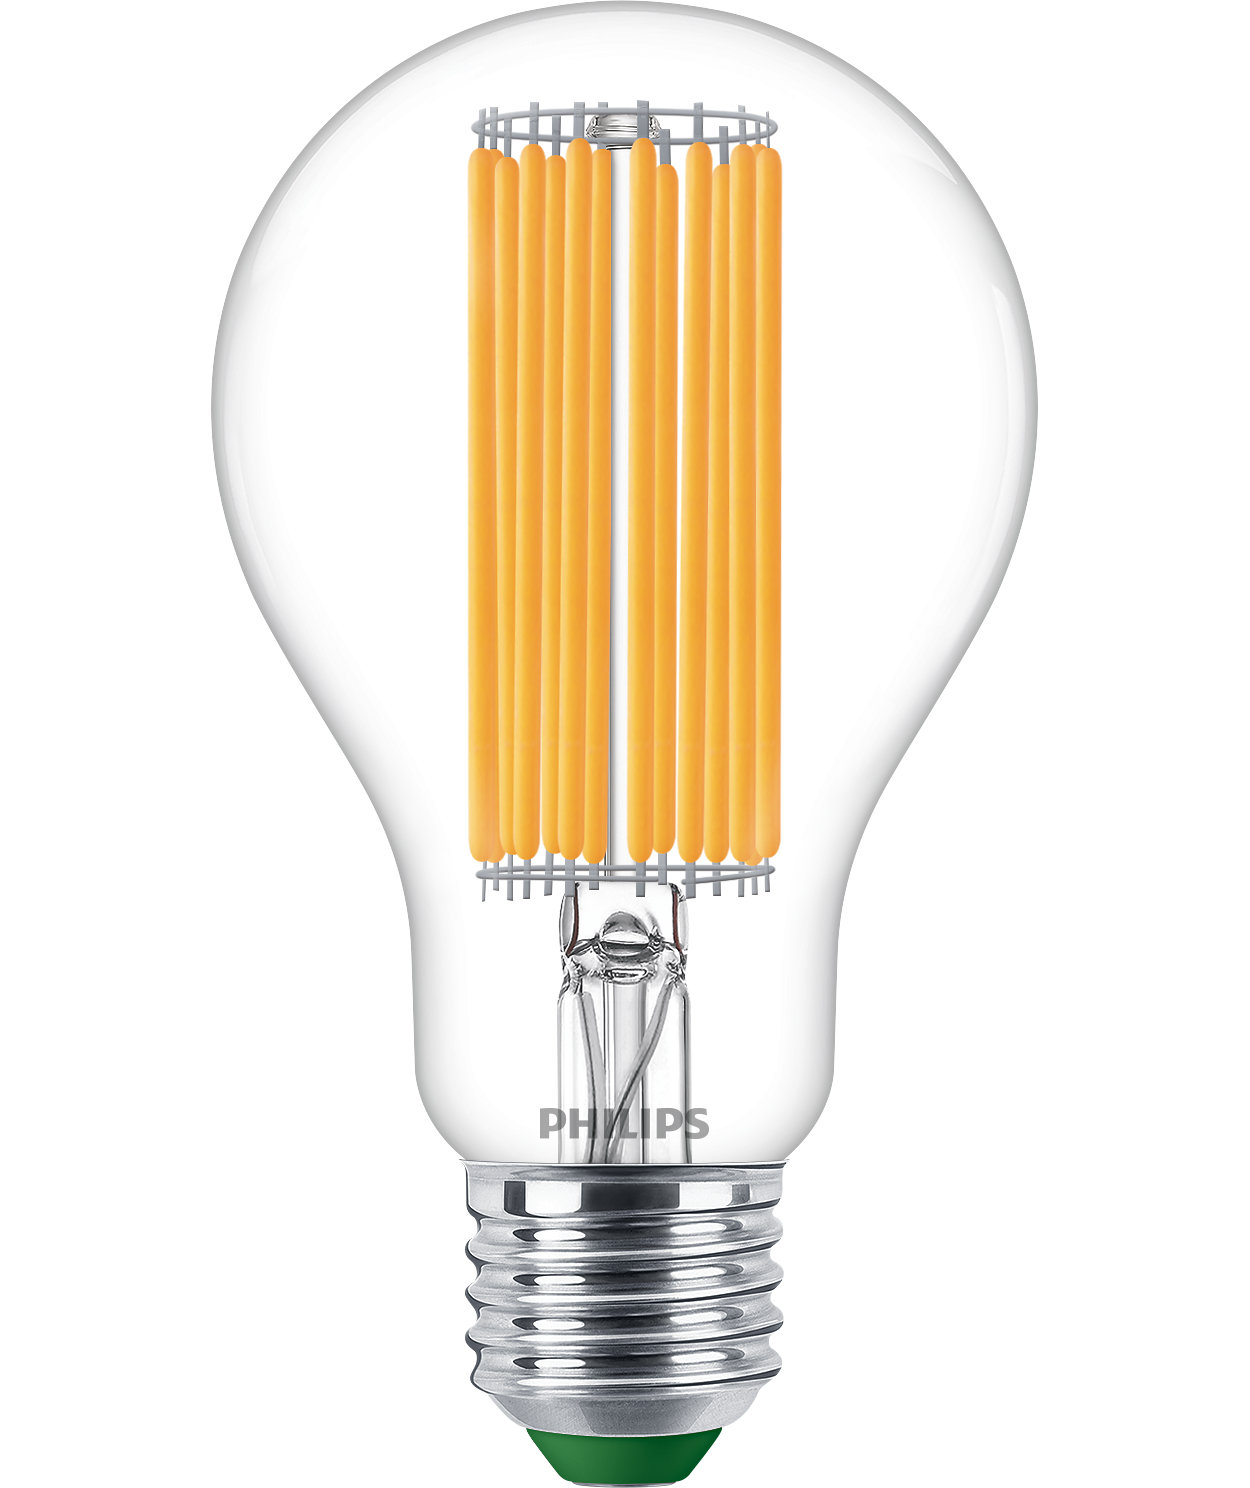 Svijetla LED rasvjeta odlične kvalitete